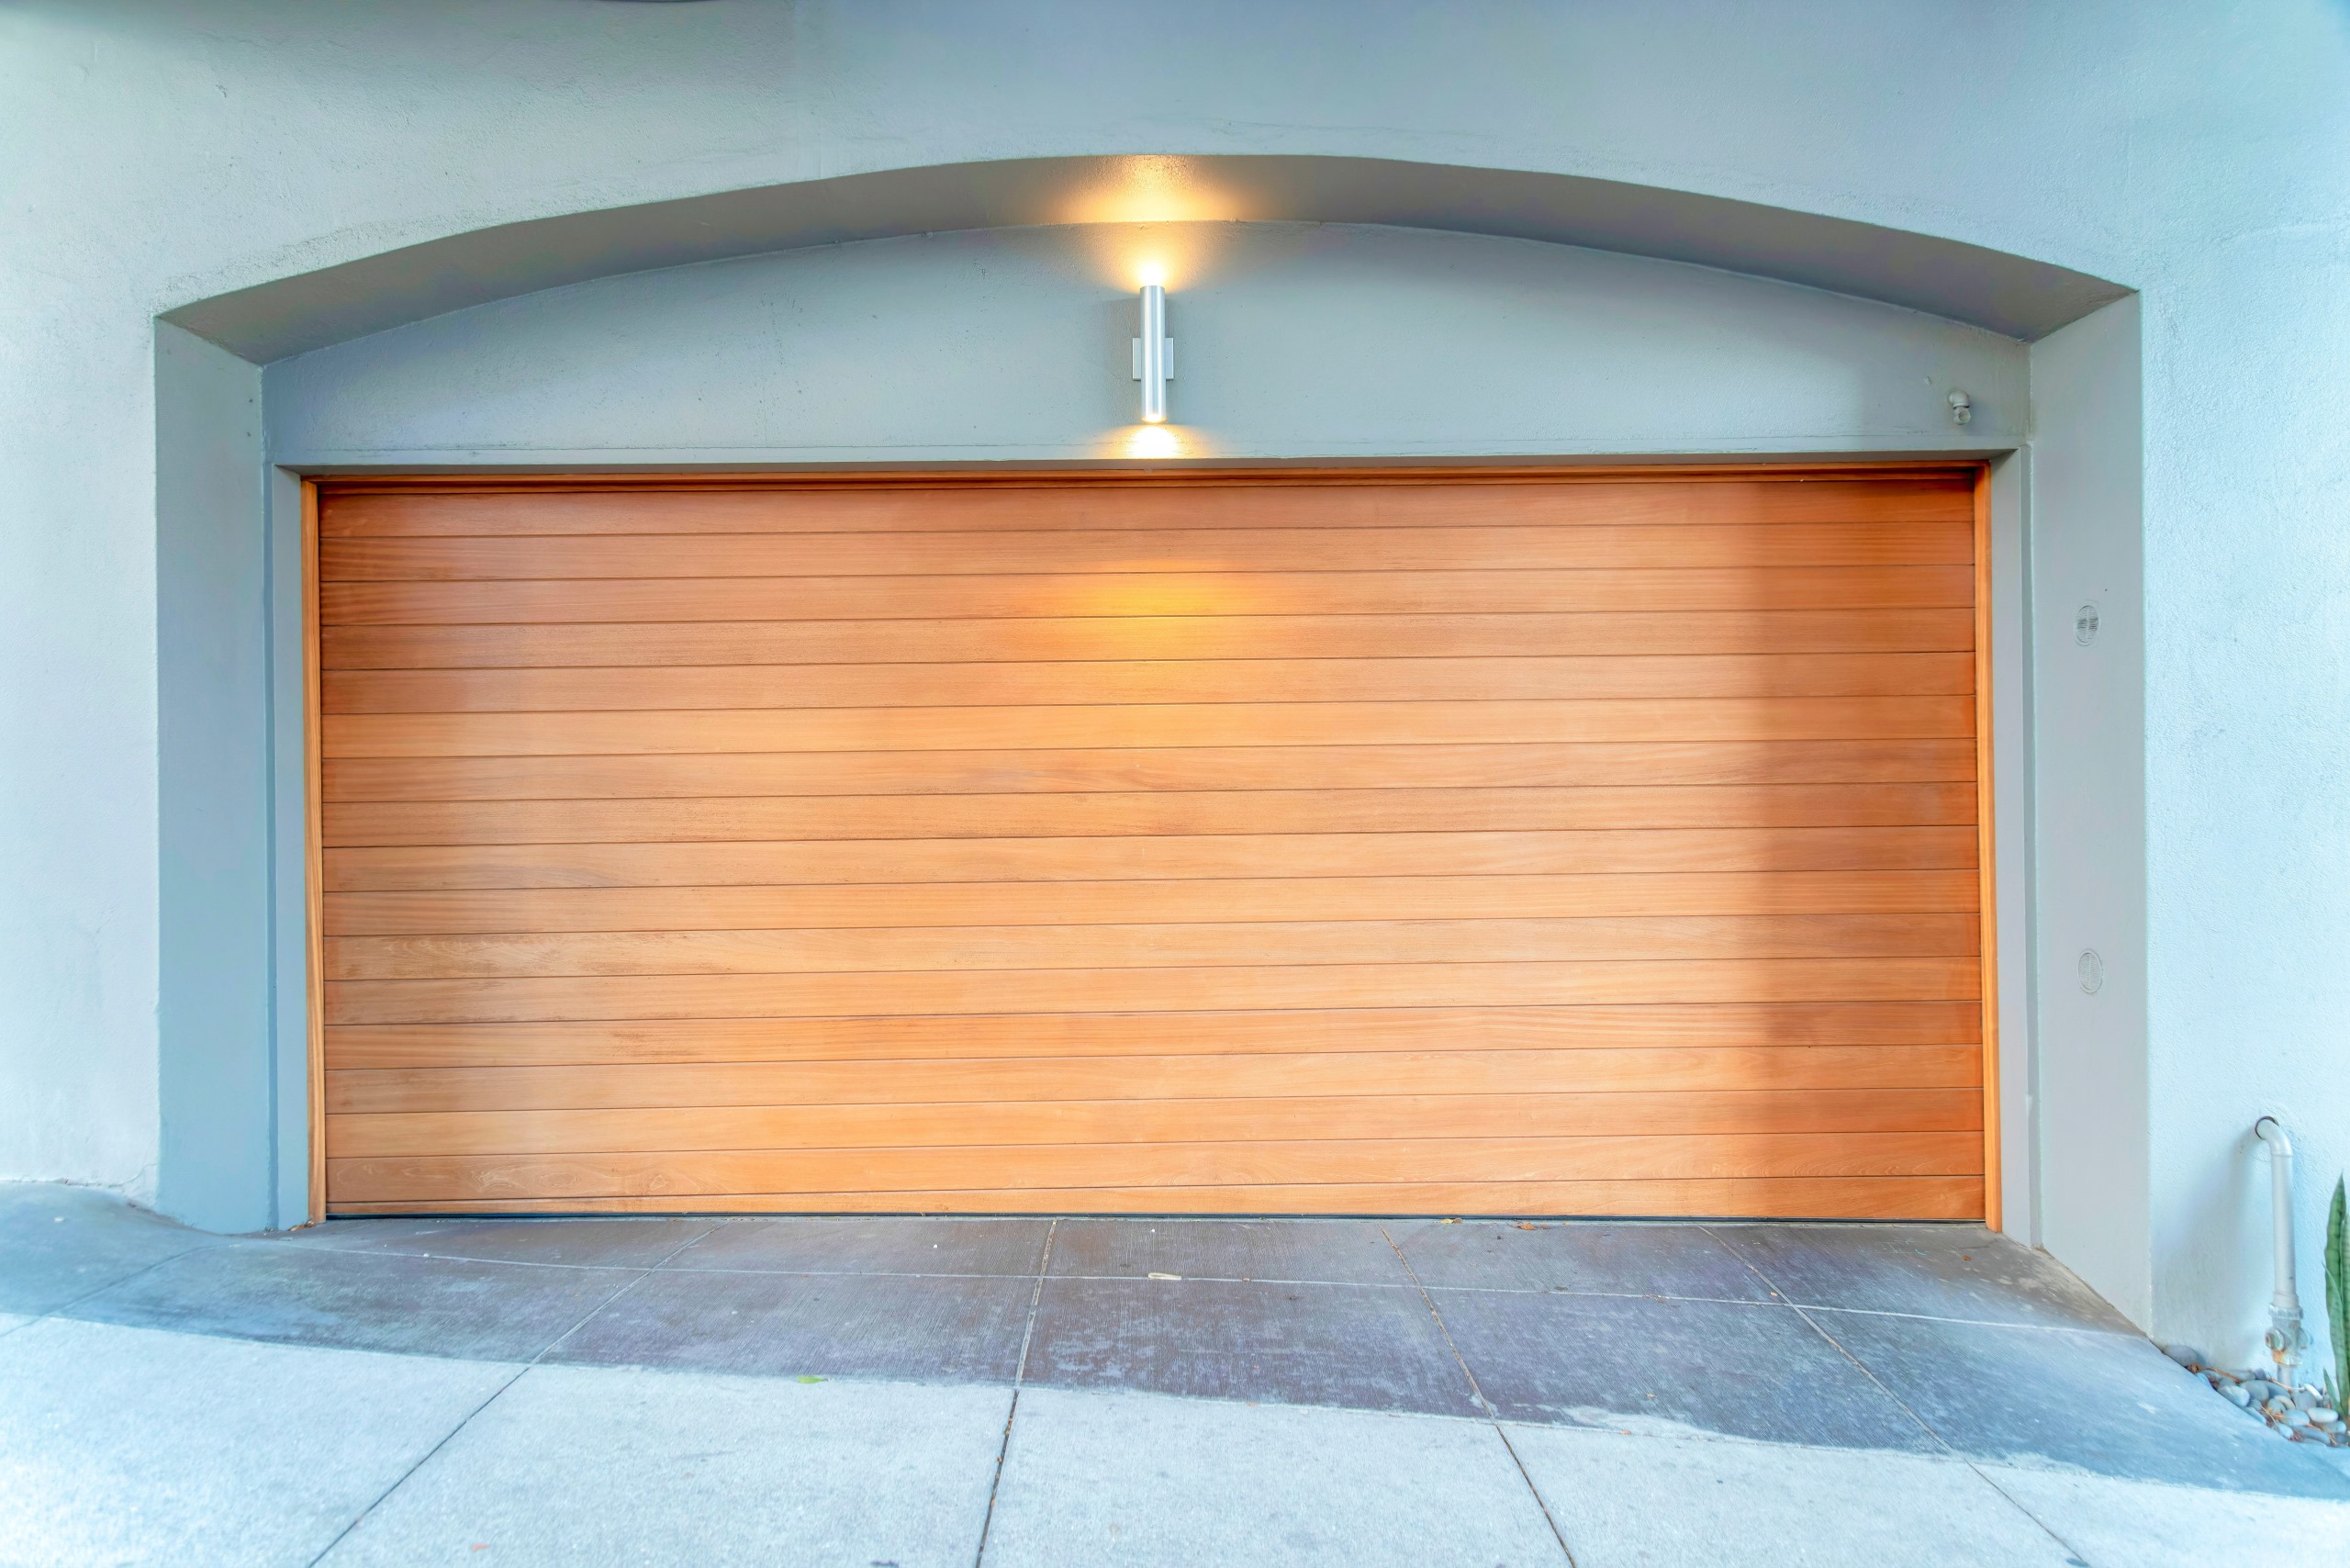 Wooden Garage Doors: A Complete Guide